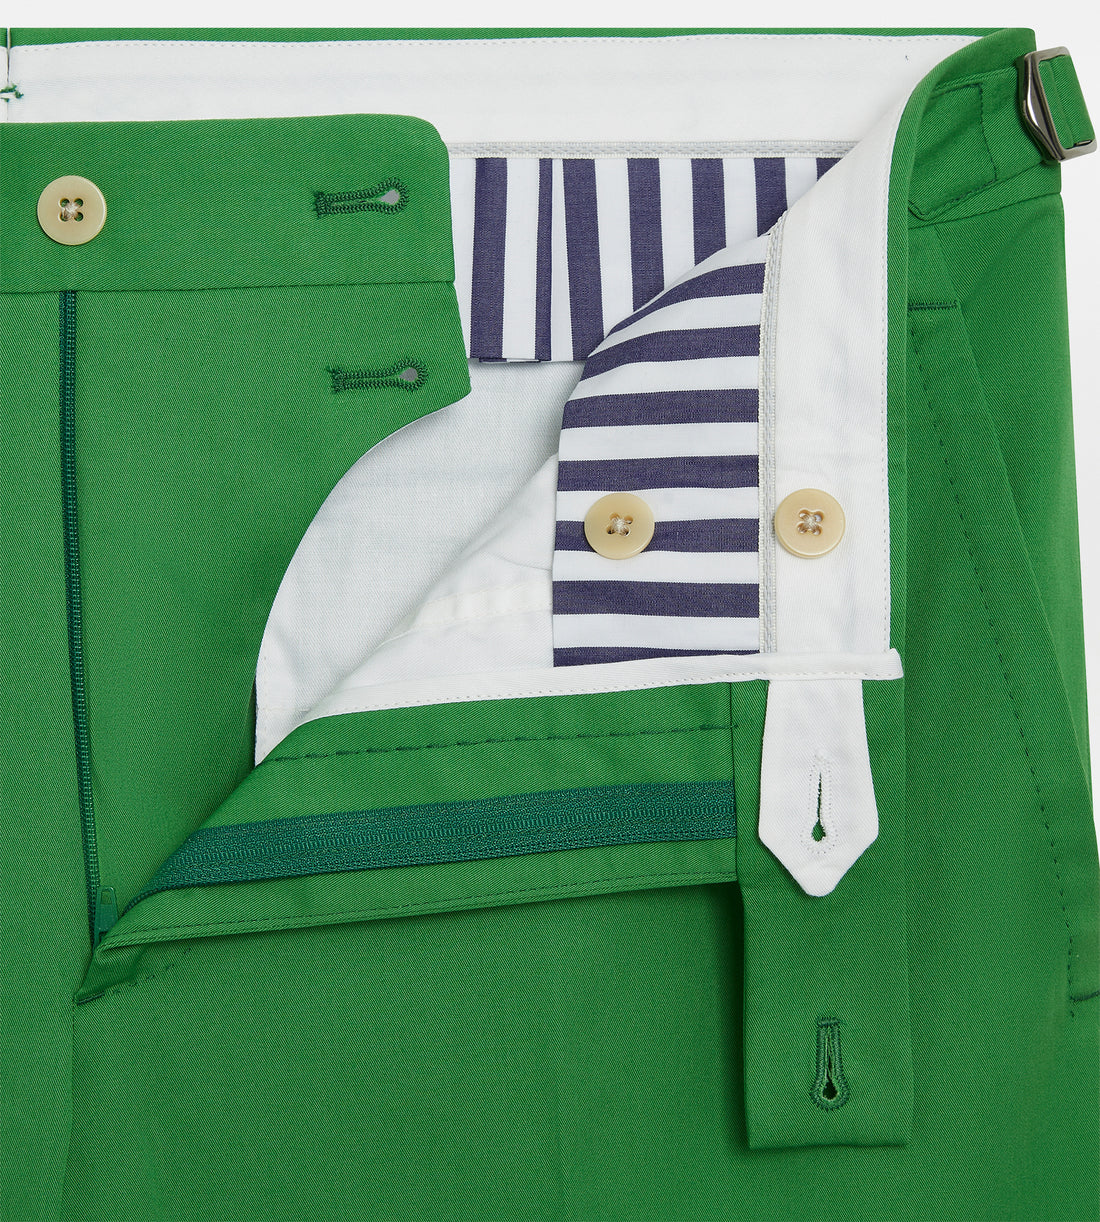 Pantalon classique en coton vert